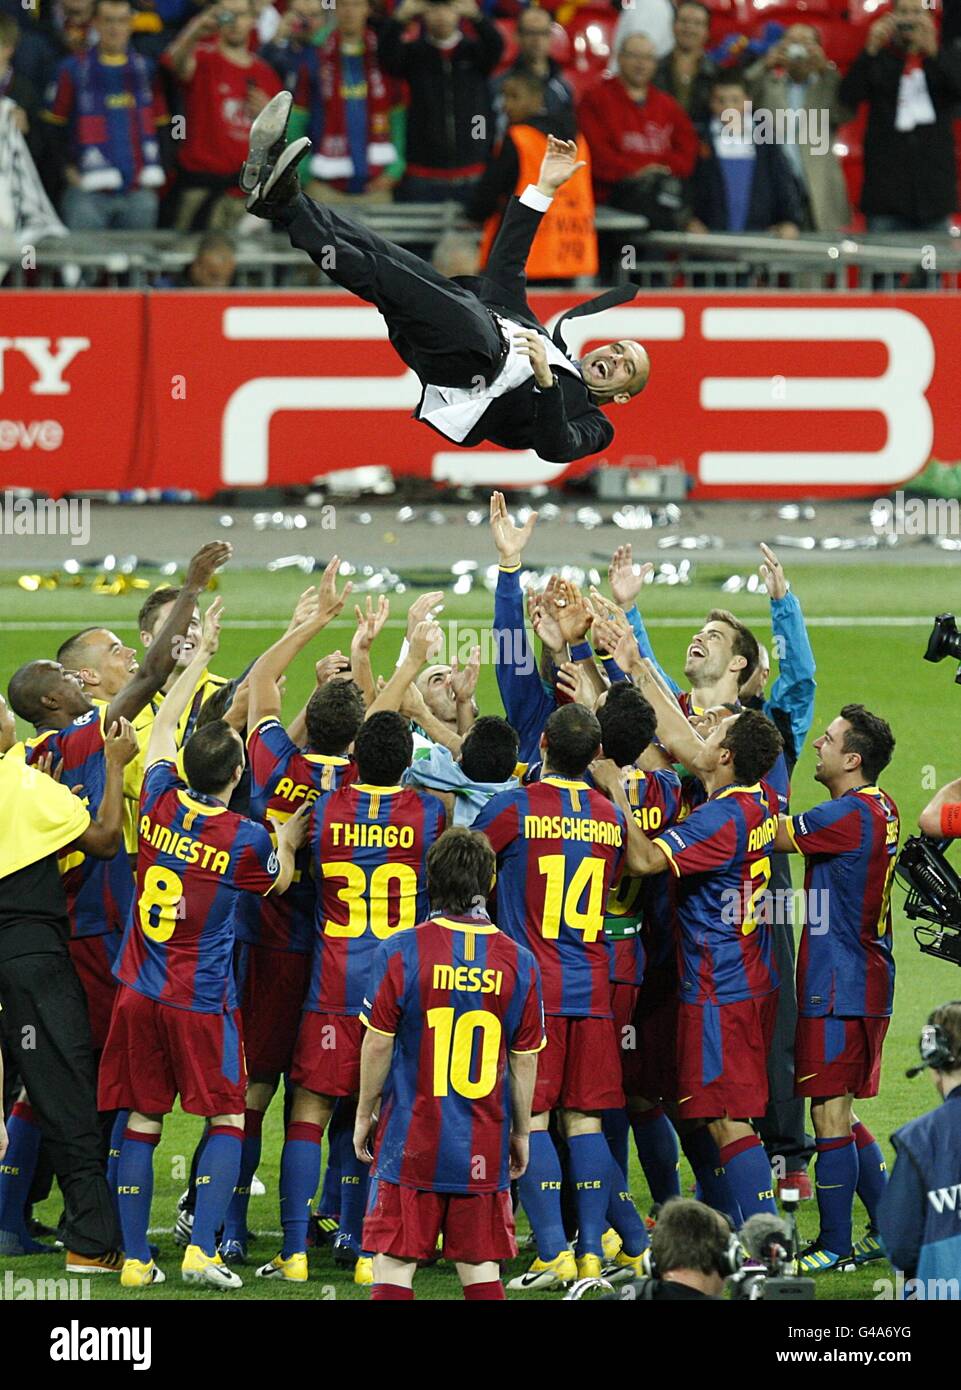 Fußball - UEFA Champions League - Finale - Barcelona / Manchester United - Wembley Stadium. Barcelonas Spieler feiern, indem sie ihren Manager Josep Guardiola in die Luft werfen Stockfoto